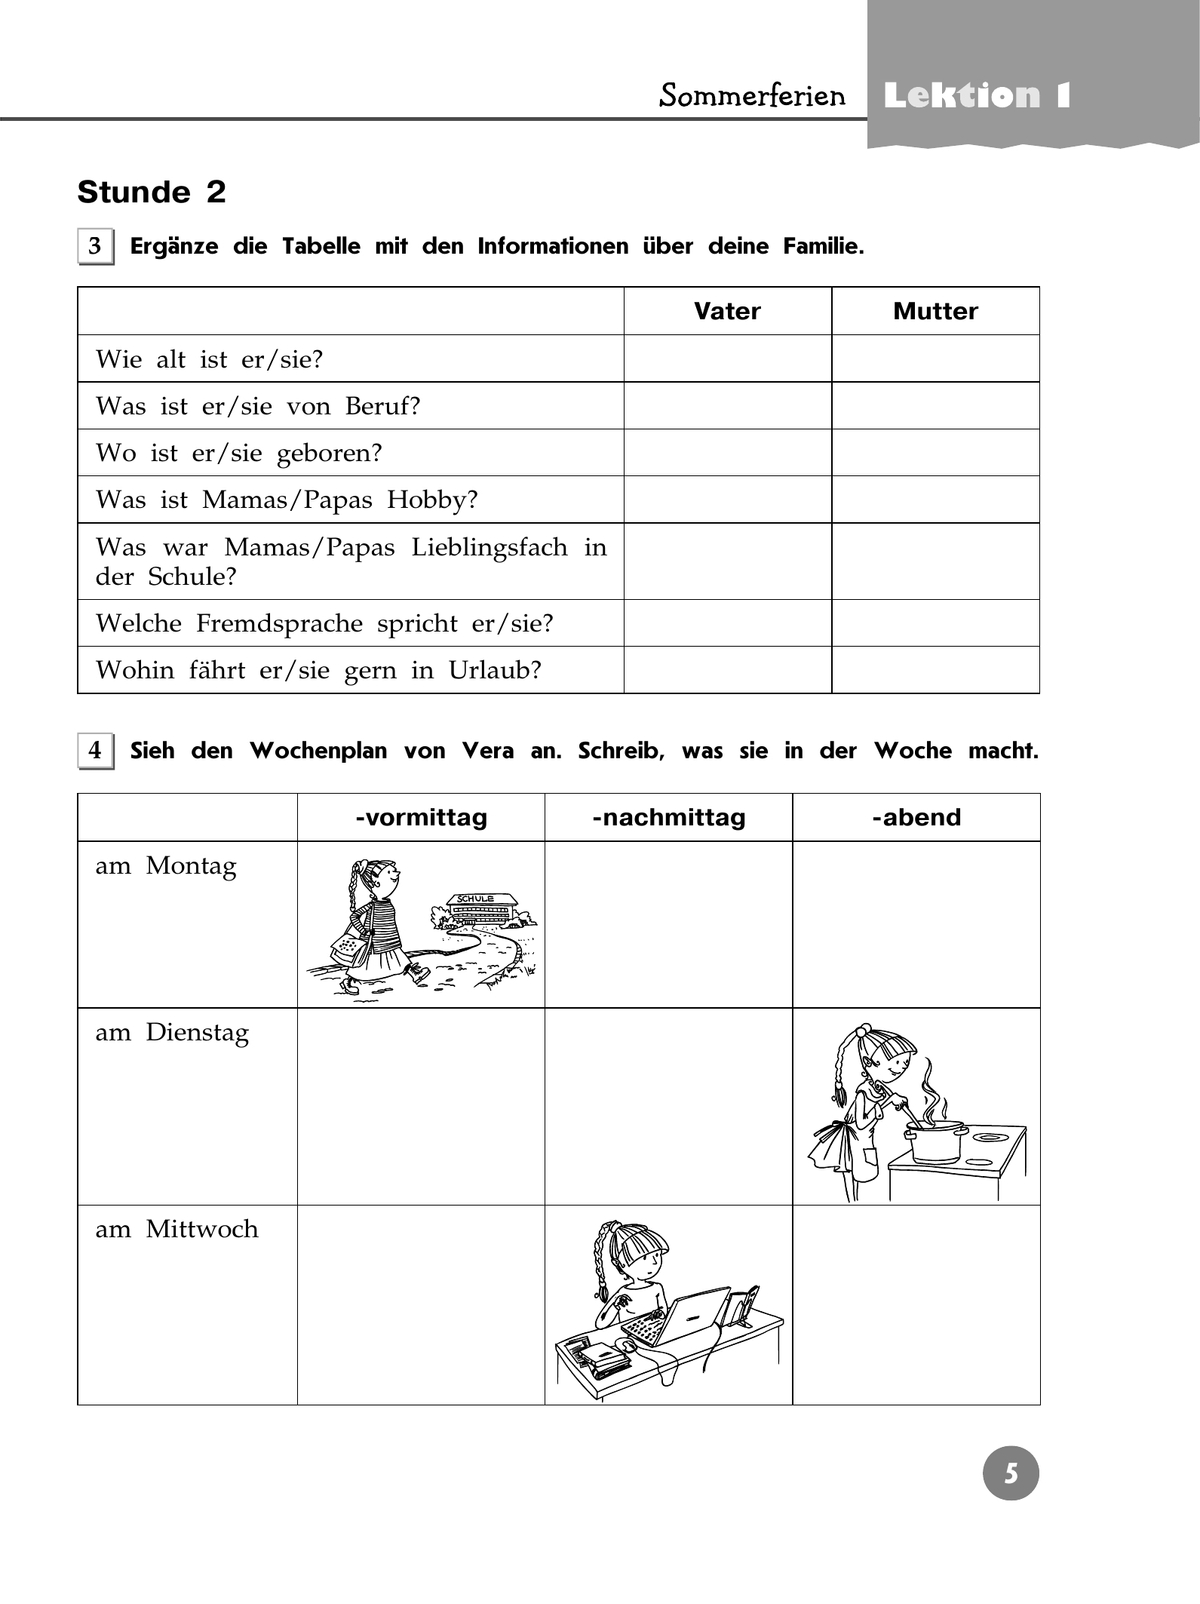 Немецкий язык. Рабочая тетрадь. 7 класс 2